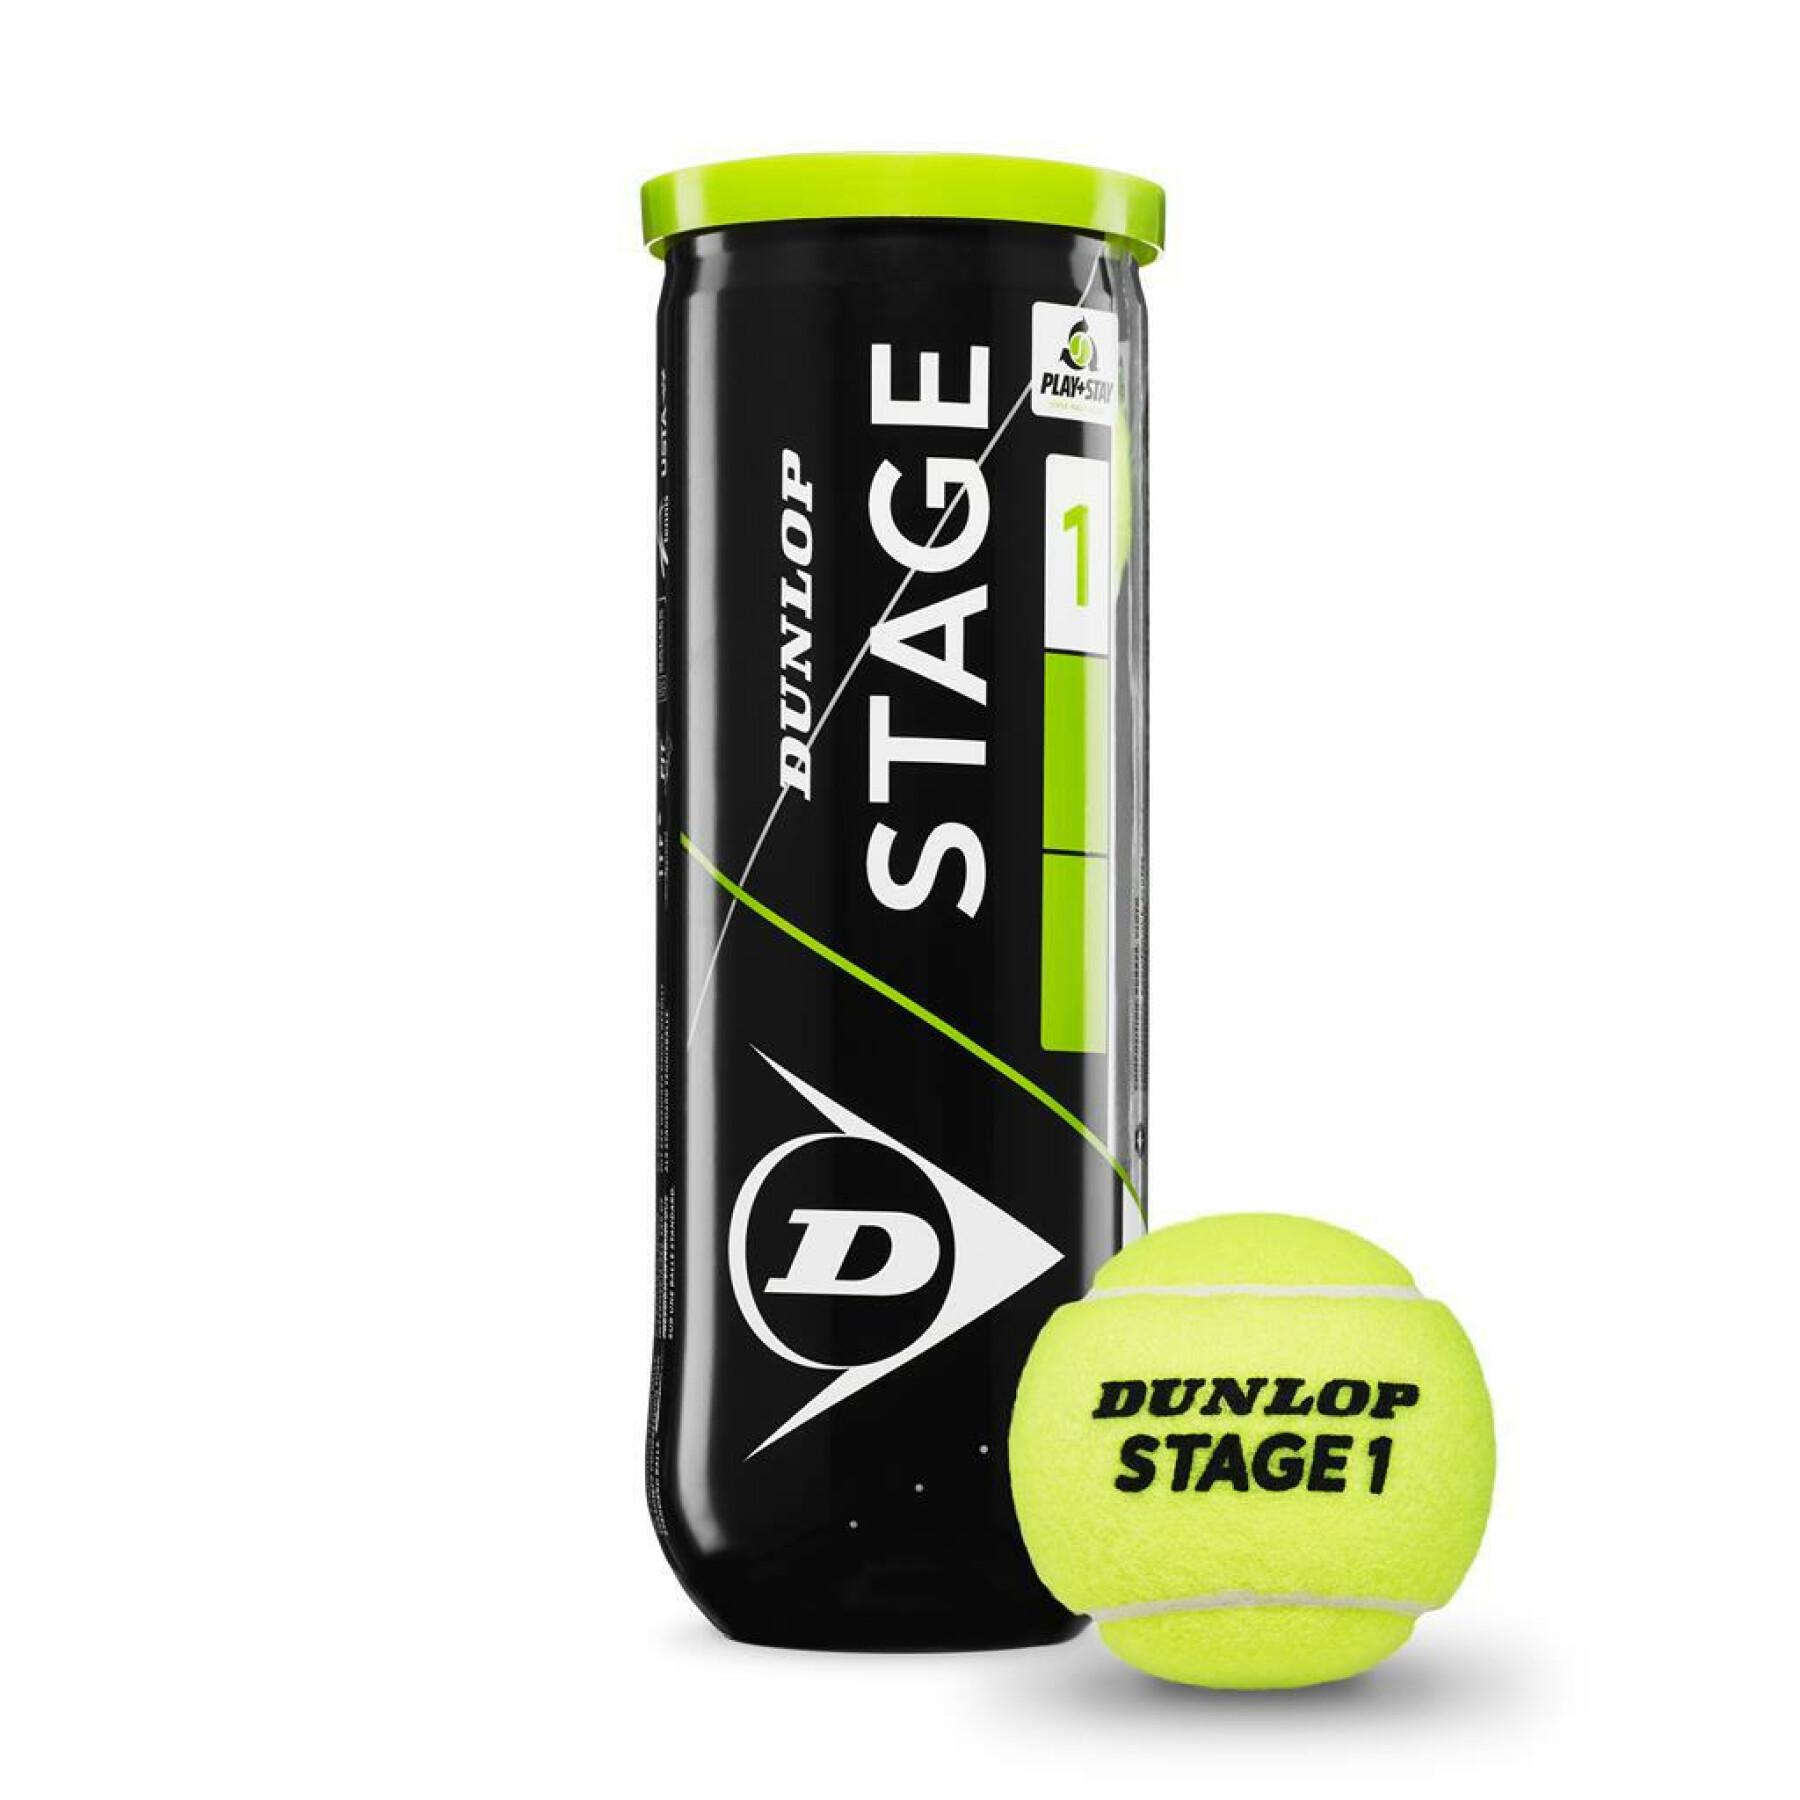 Set of 3 tennis balls Dunlop stage 1